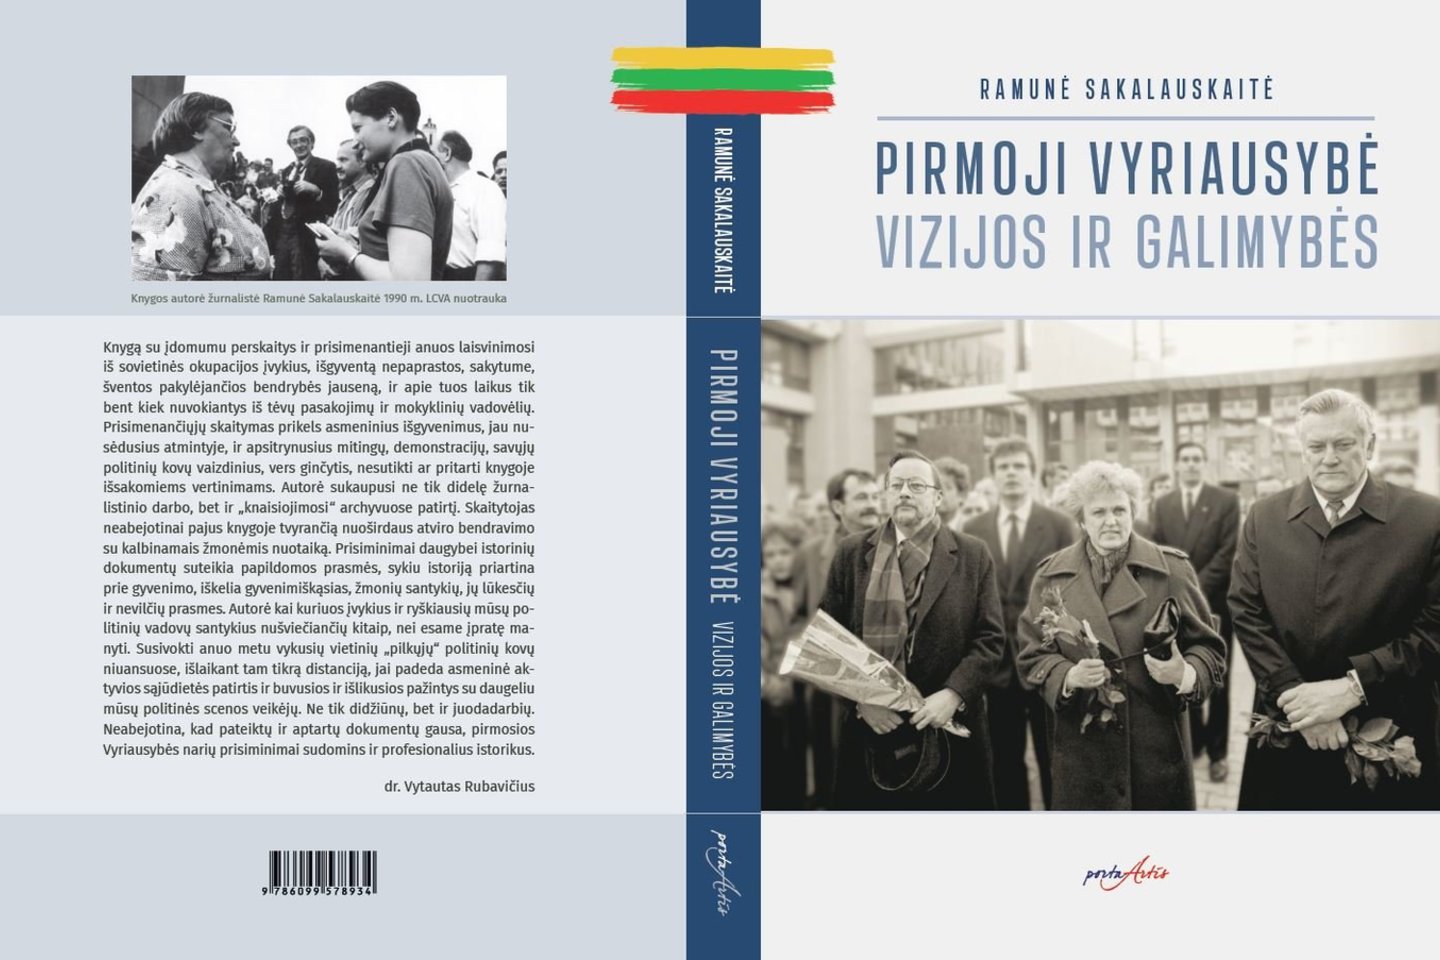 Ramunės Sakalauskaitės knyga „Pirmoji Vyriausybė – vizijos ir galimybės“ primena Ministrės Pirmininkės Kazimieros Prunskienės vadovaujamo ministrų kabineto veiklą.